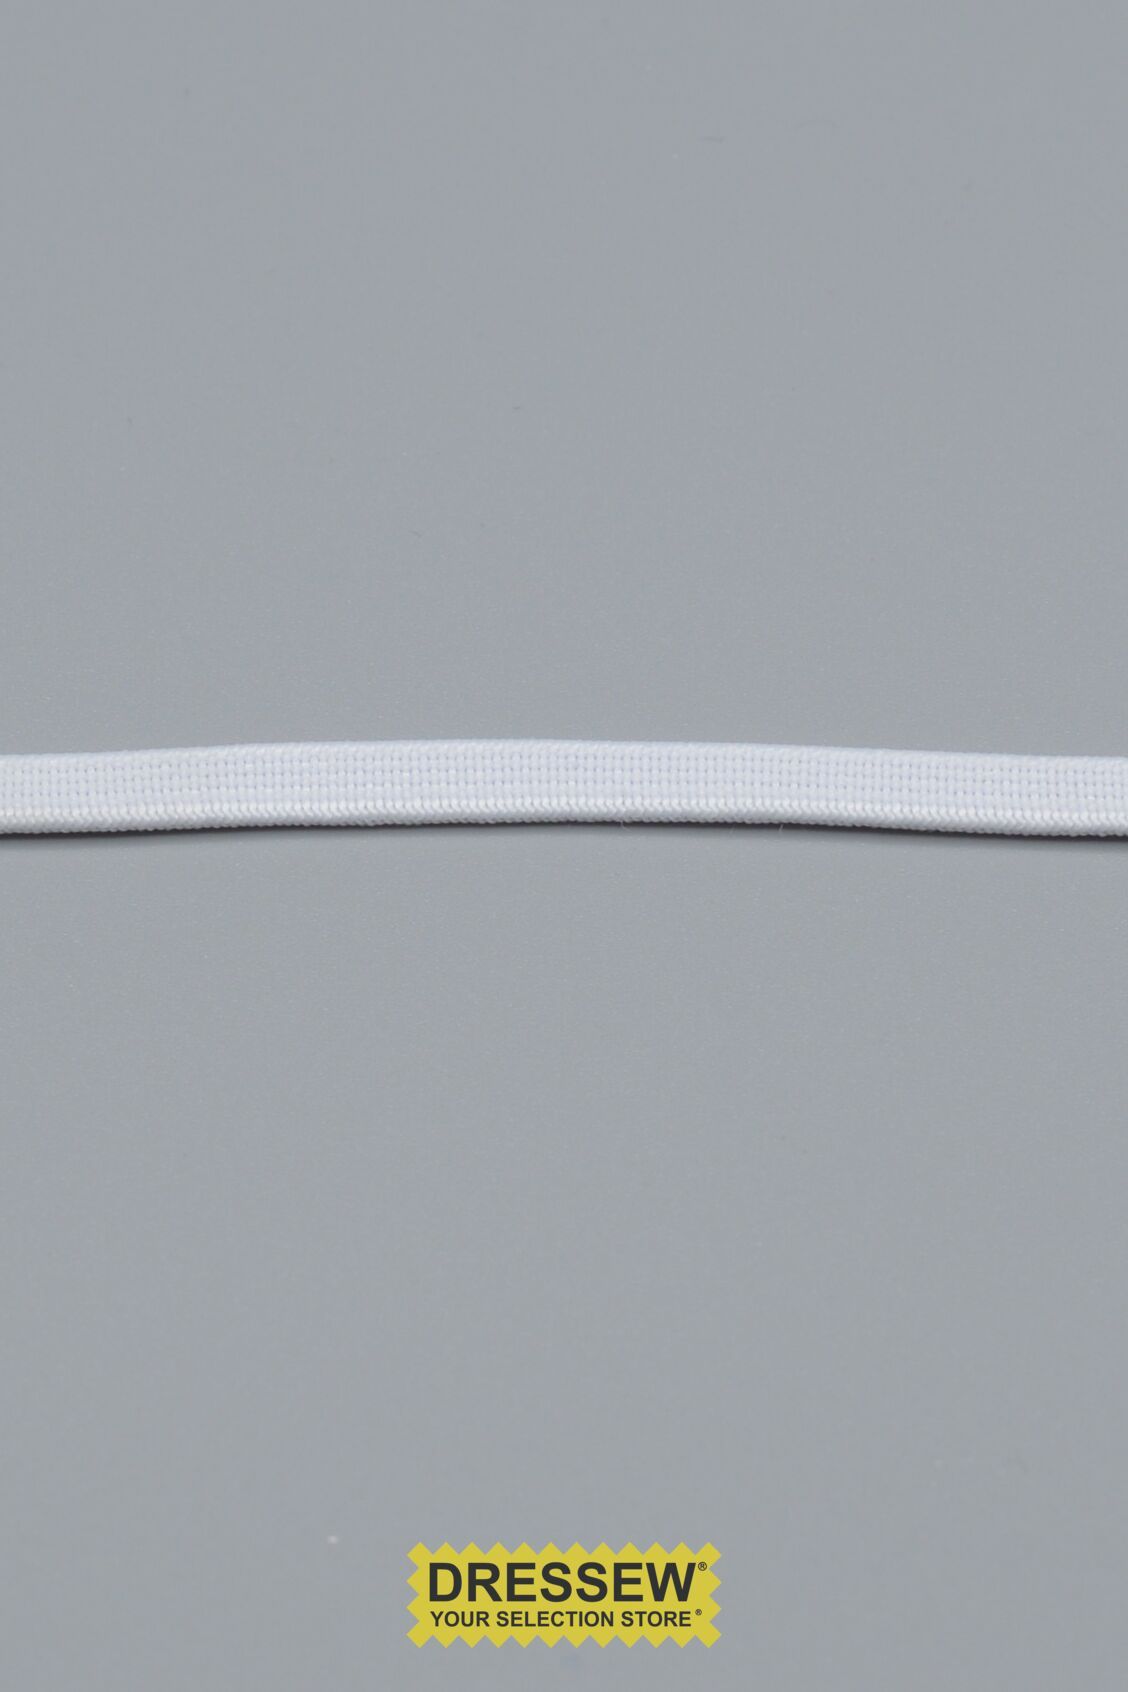 Woven Elastic 6mm (1/4") White